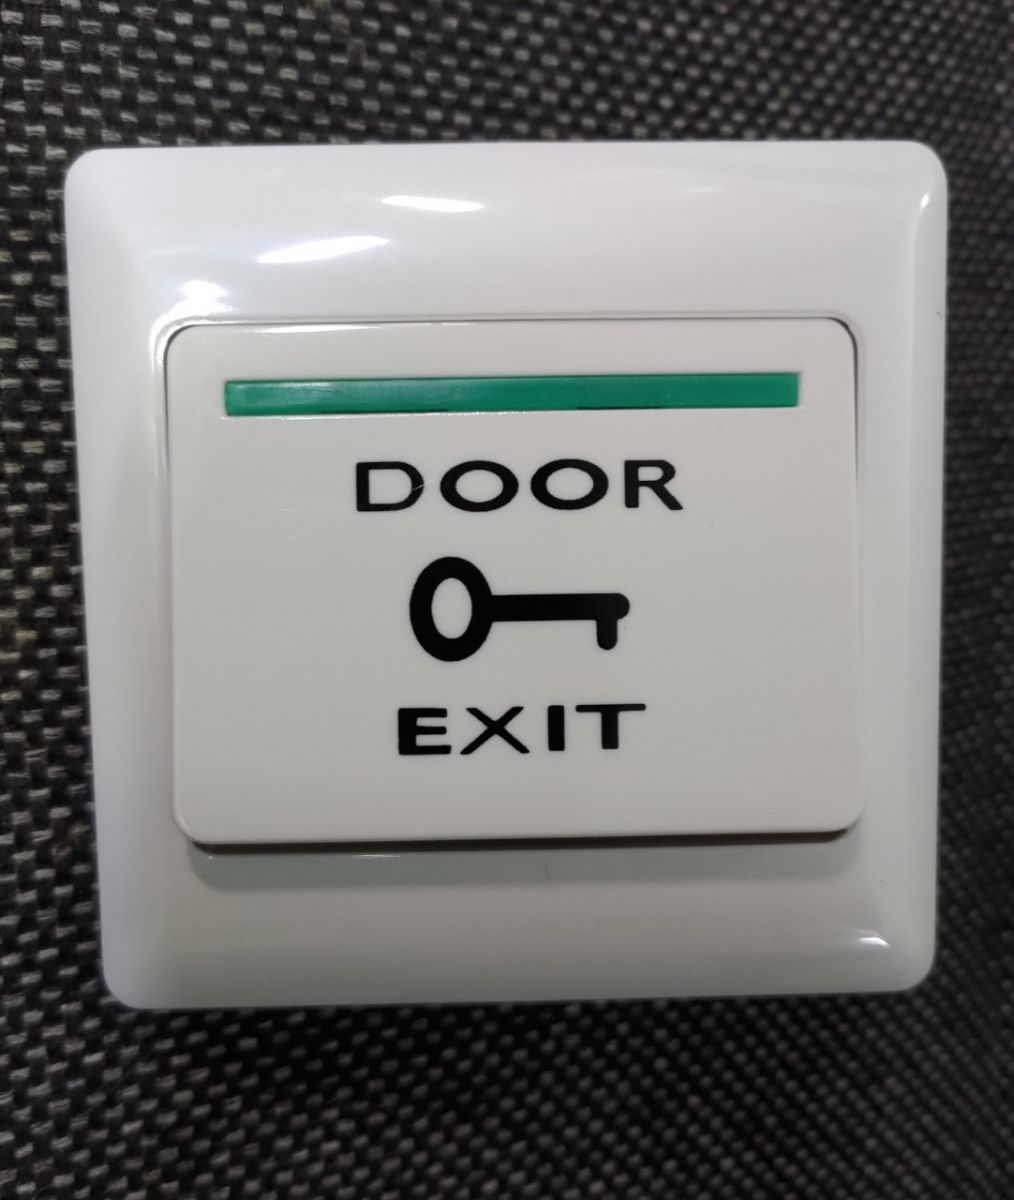 cong-tac-thoat-hiem-door-exit